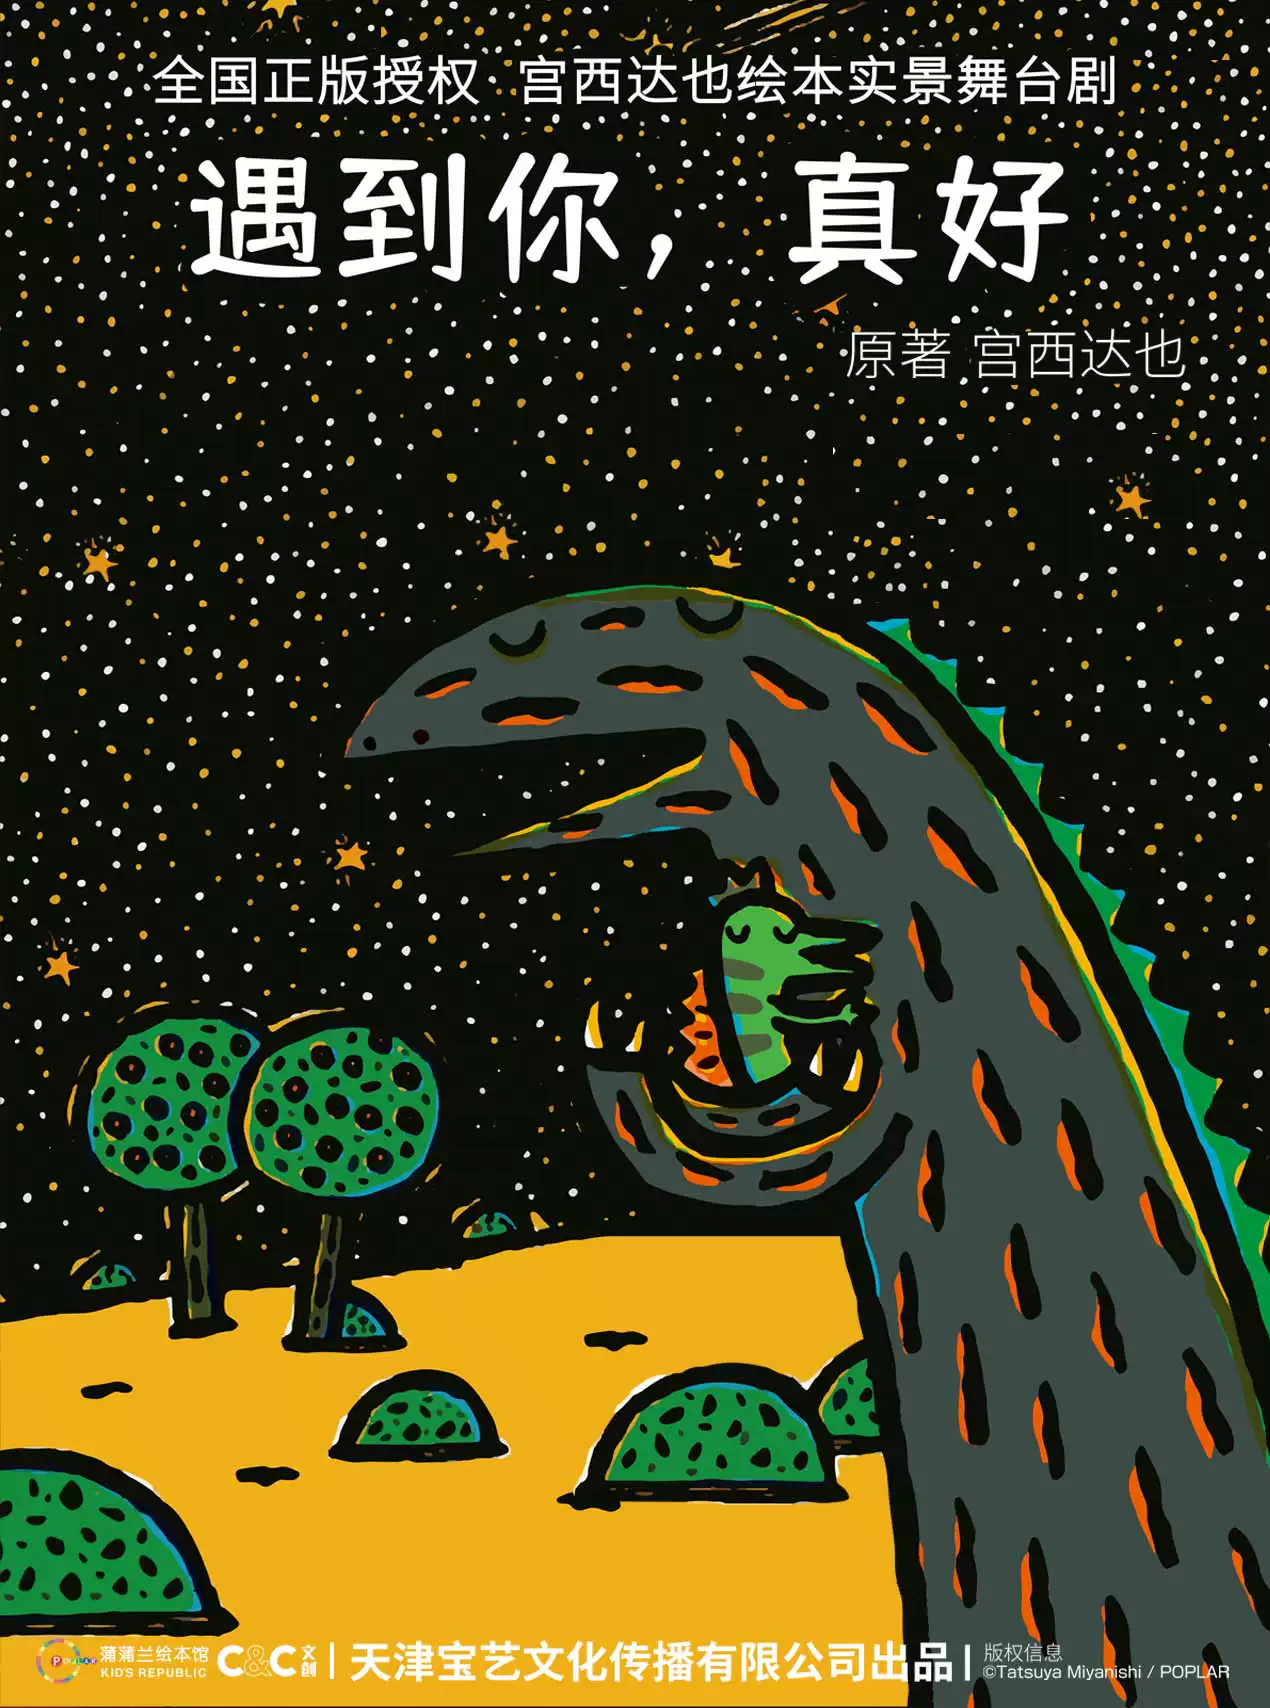 【臺州】【瀚海文化】正版授權·宮西達也恐龍系列繪本實景舞臺劇《遇到你，真好》